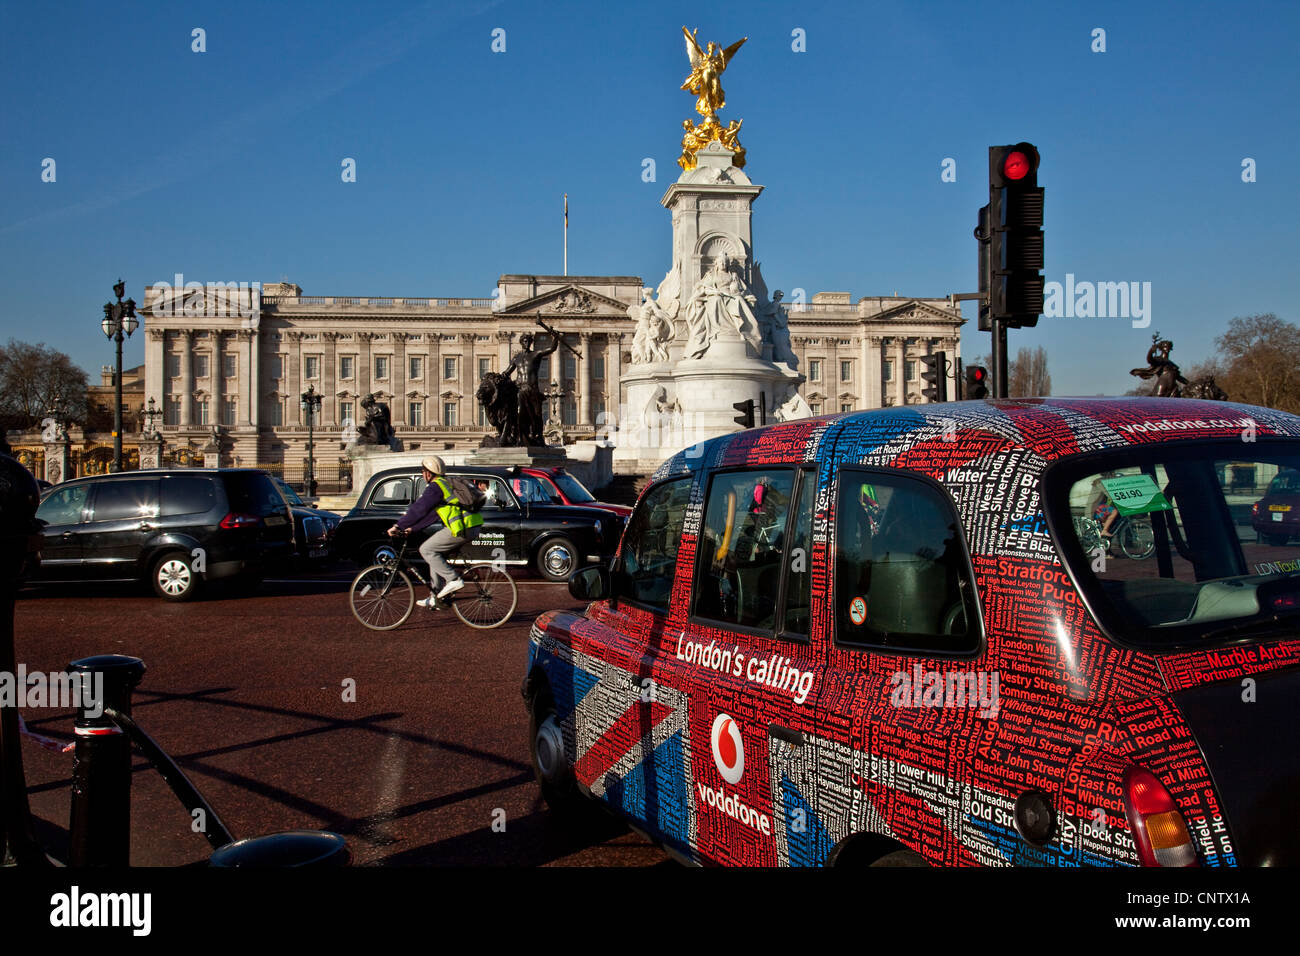 'Union Jack' taxi outside Buckingham Palace, London, England Stock Photo